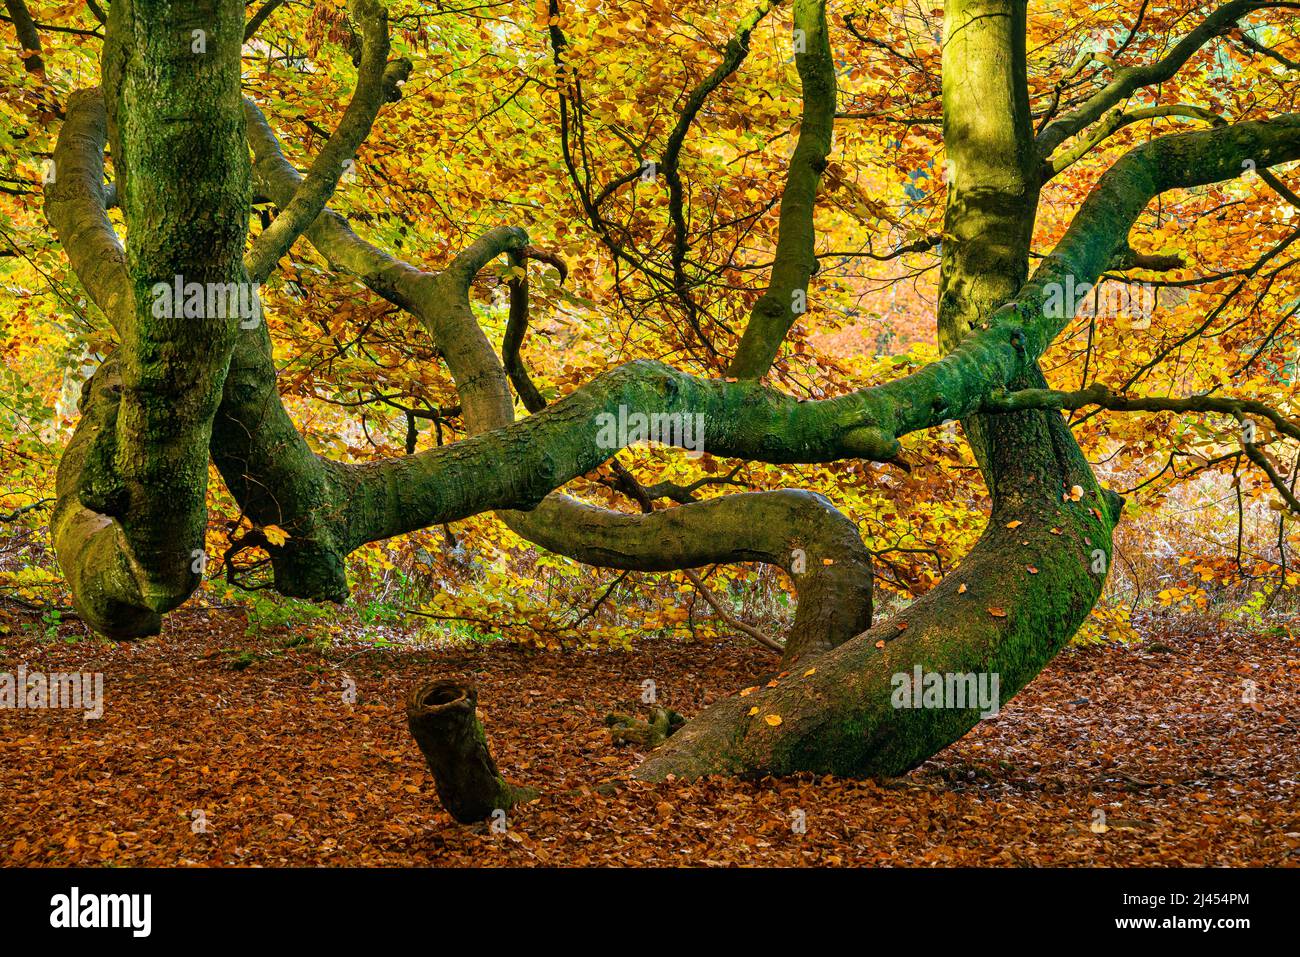 Bemooster Stamm einer alten Buche (Fagus) im Herbst, Urwald Sababurg, Hessen, Deutschland Banque D'Images